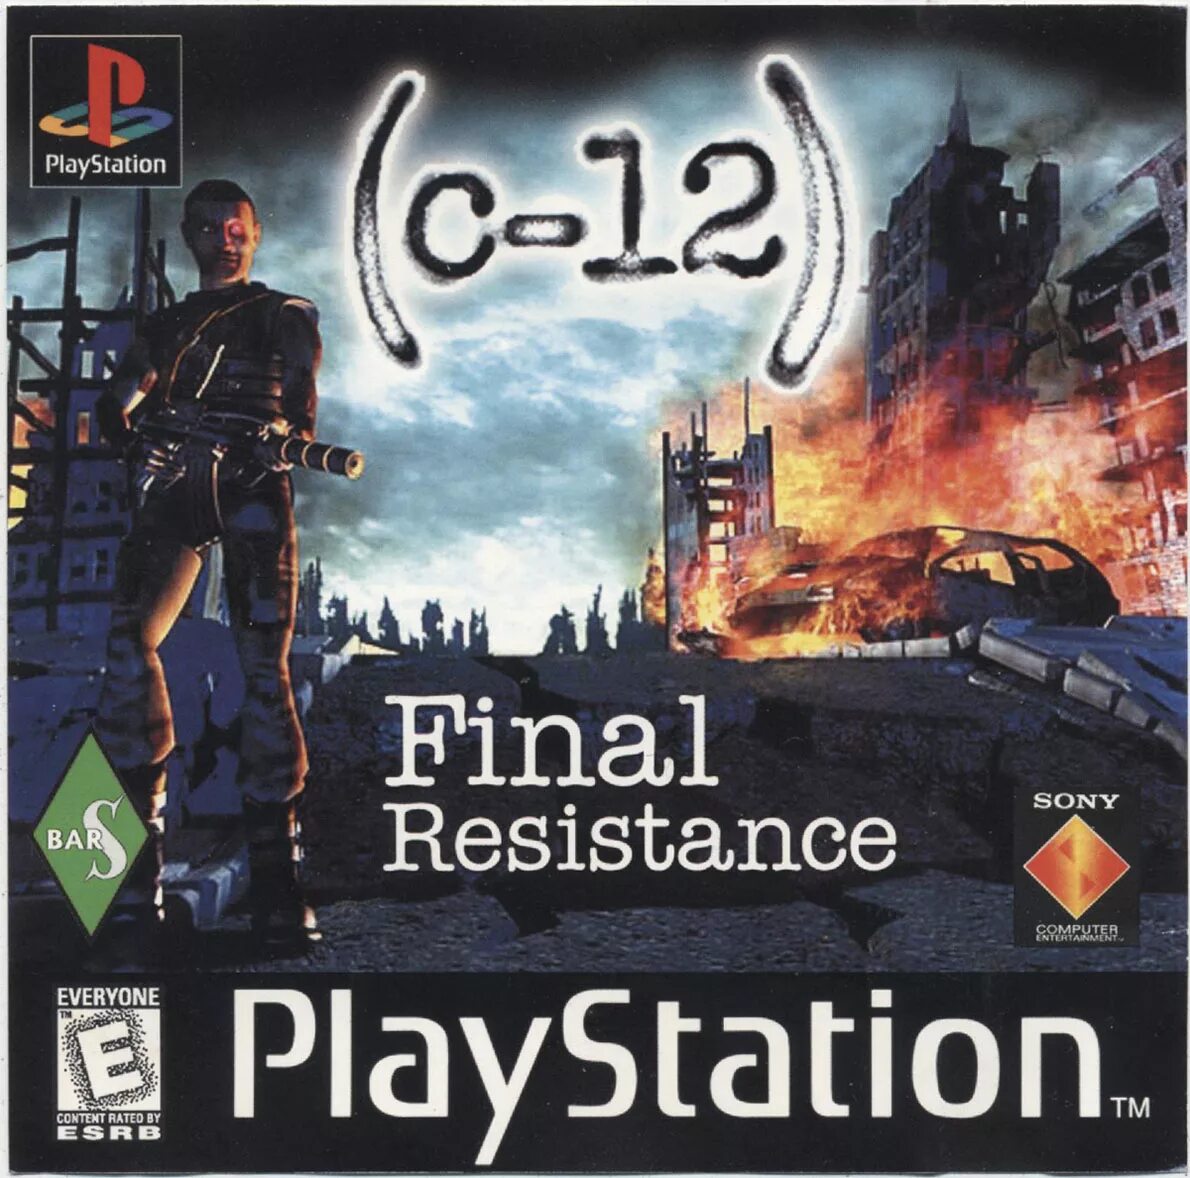 C 12 download. C-12 ps1. C-12 Final Resistance ps1. C-12 Final Resistance ps1 обложка. PLAYSTATION 1 c12 Final Resistance.